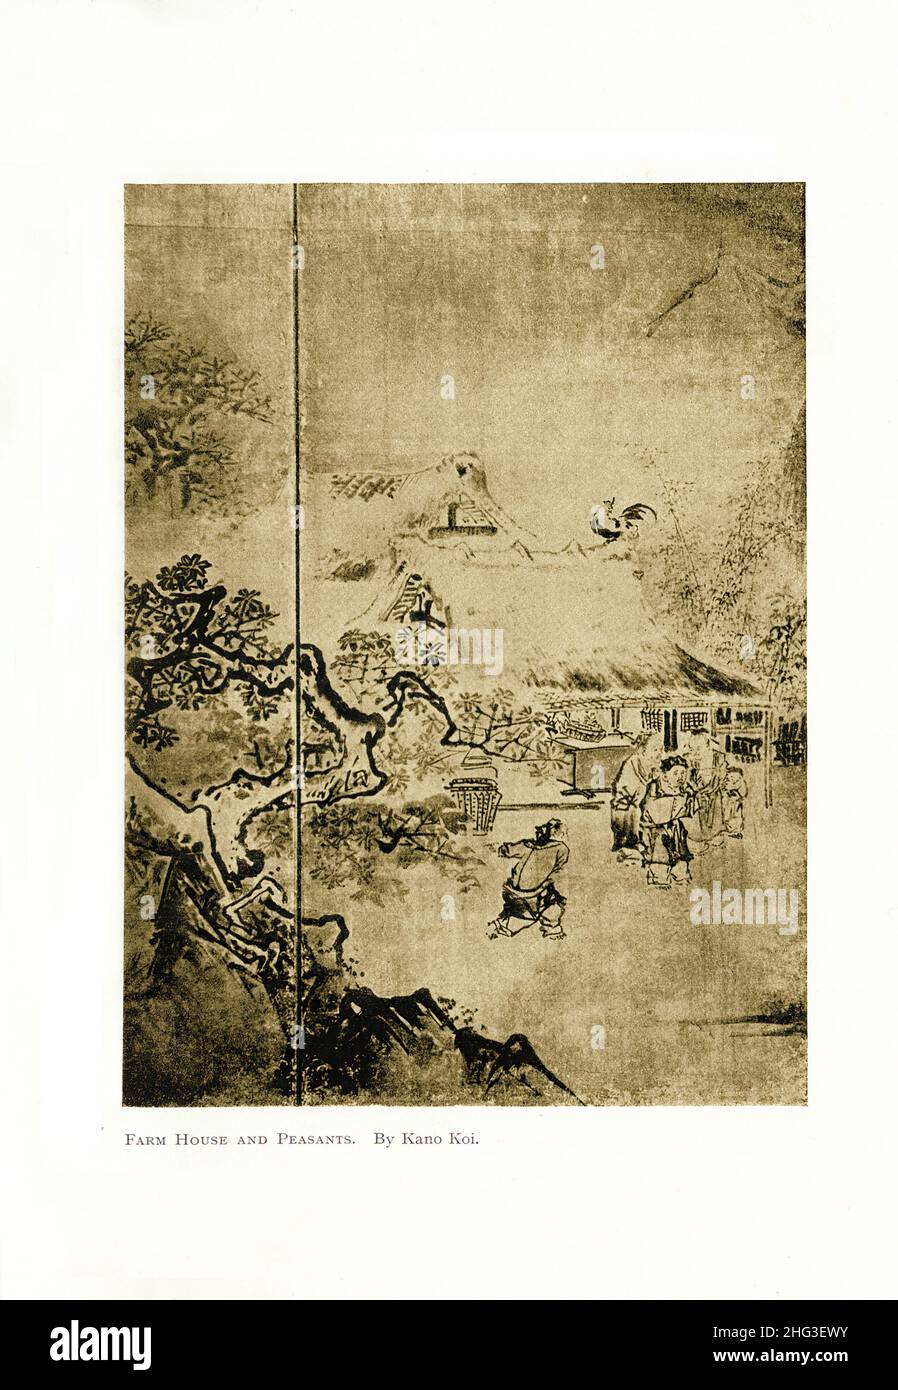 Pintura japonesa: Casa de campo y campesinos. Por Kano Koi. Período Azuchi-Momoyama. Reproducción de la ilustración del libro de 1912 Foto de stock